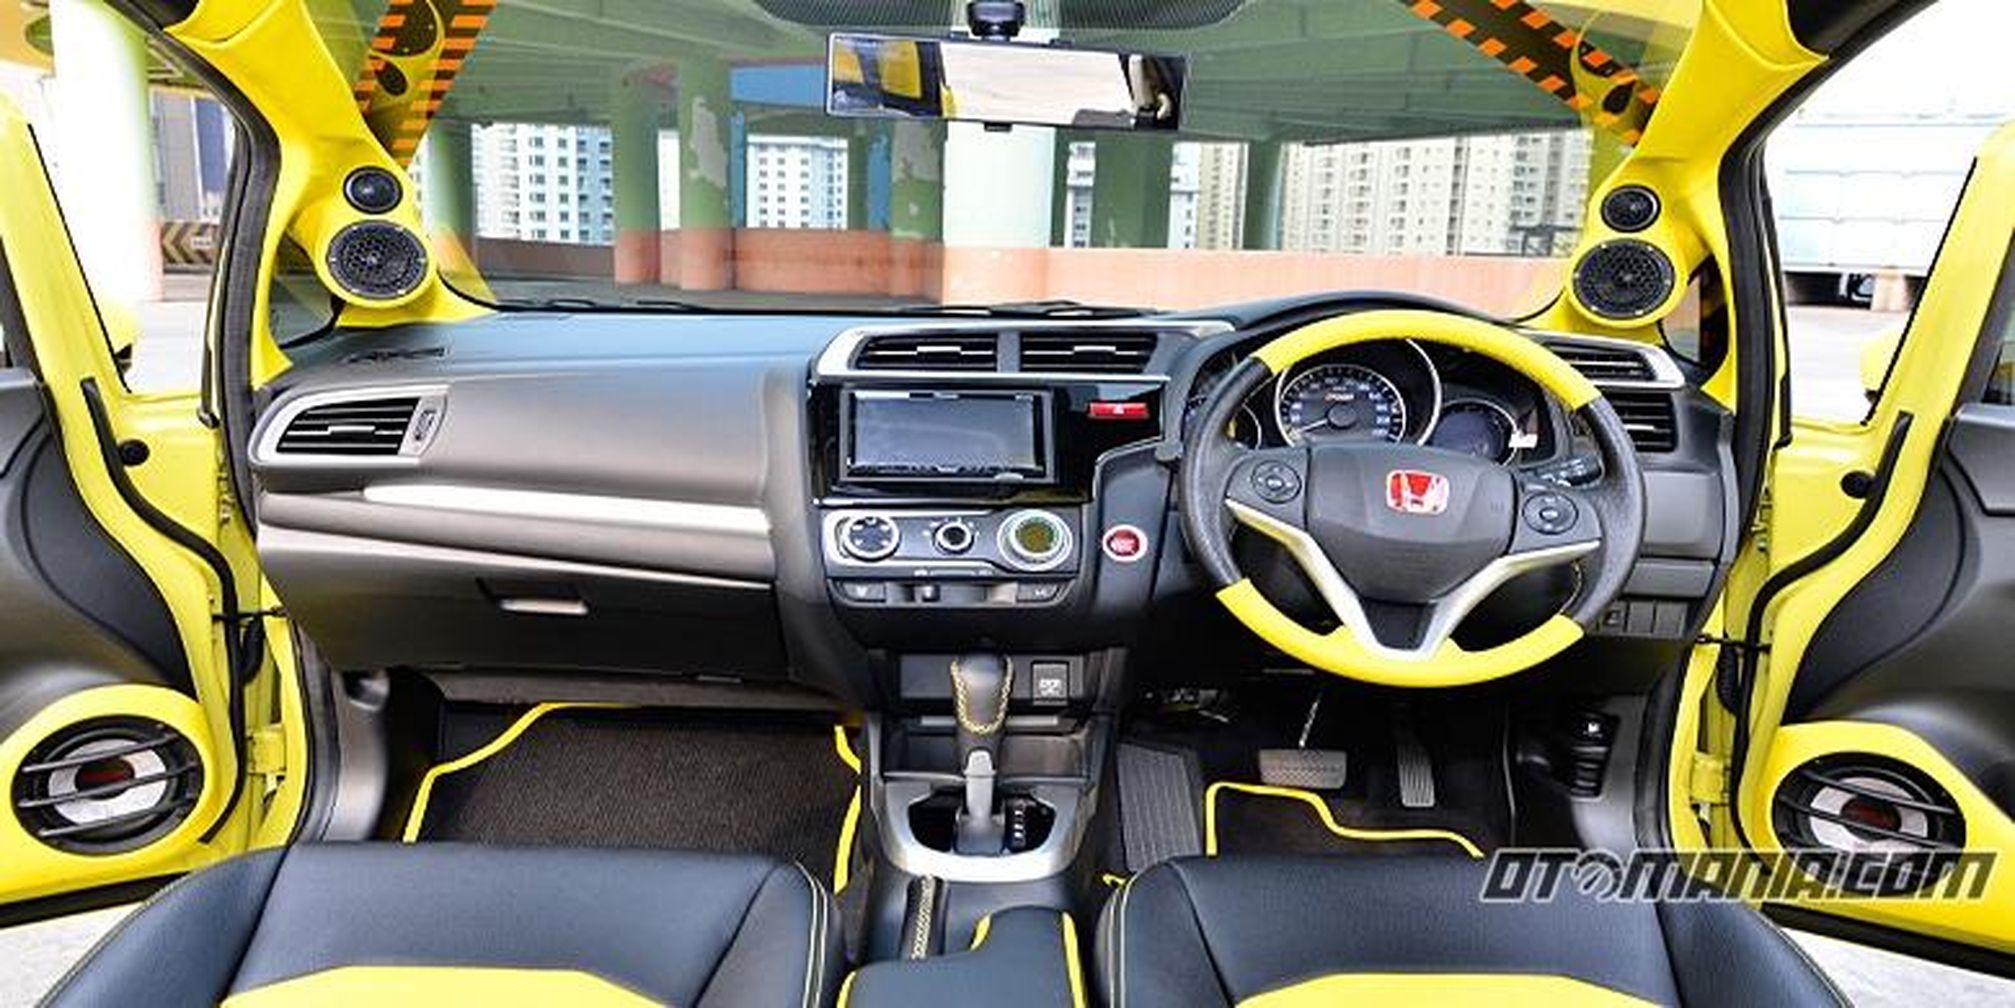 710+ Modifikasi Mobil Brio Warna Kuning Gratis Terbaik